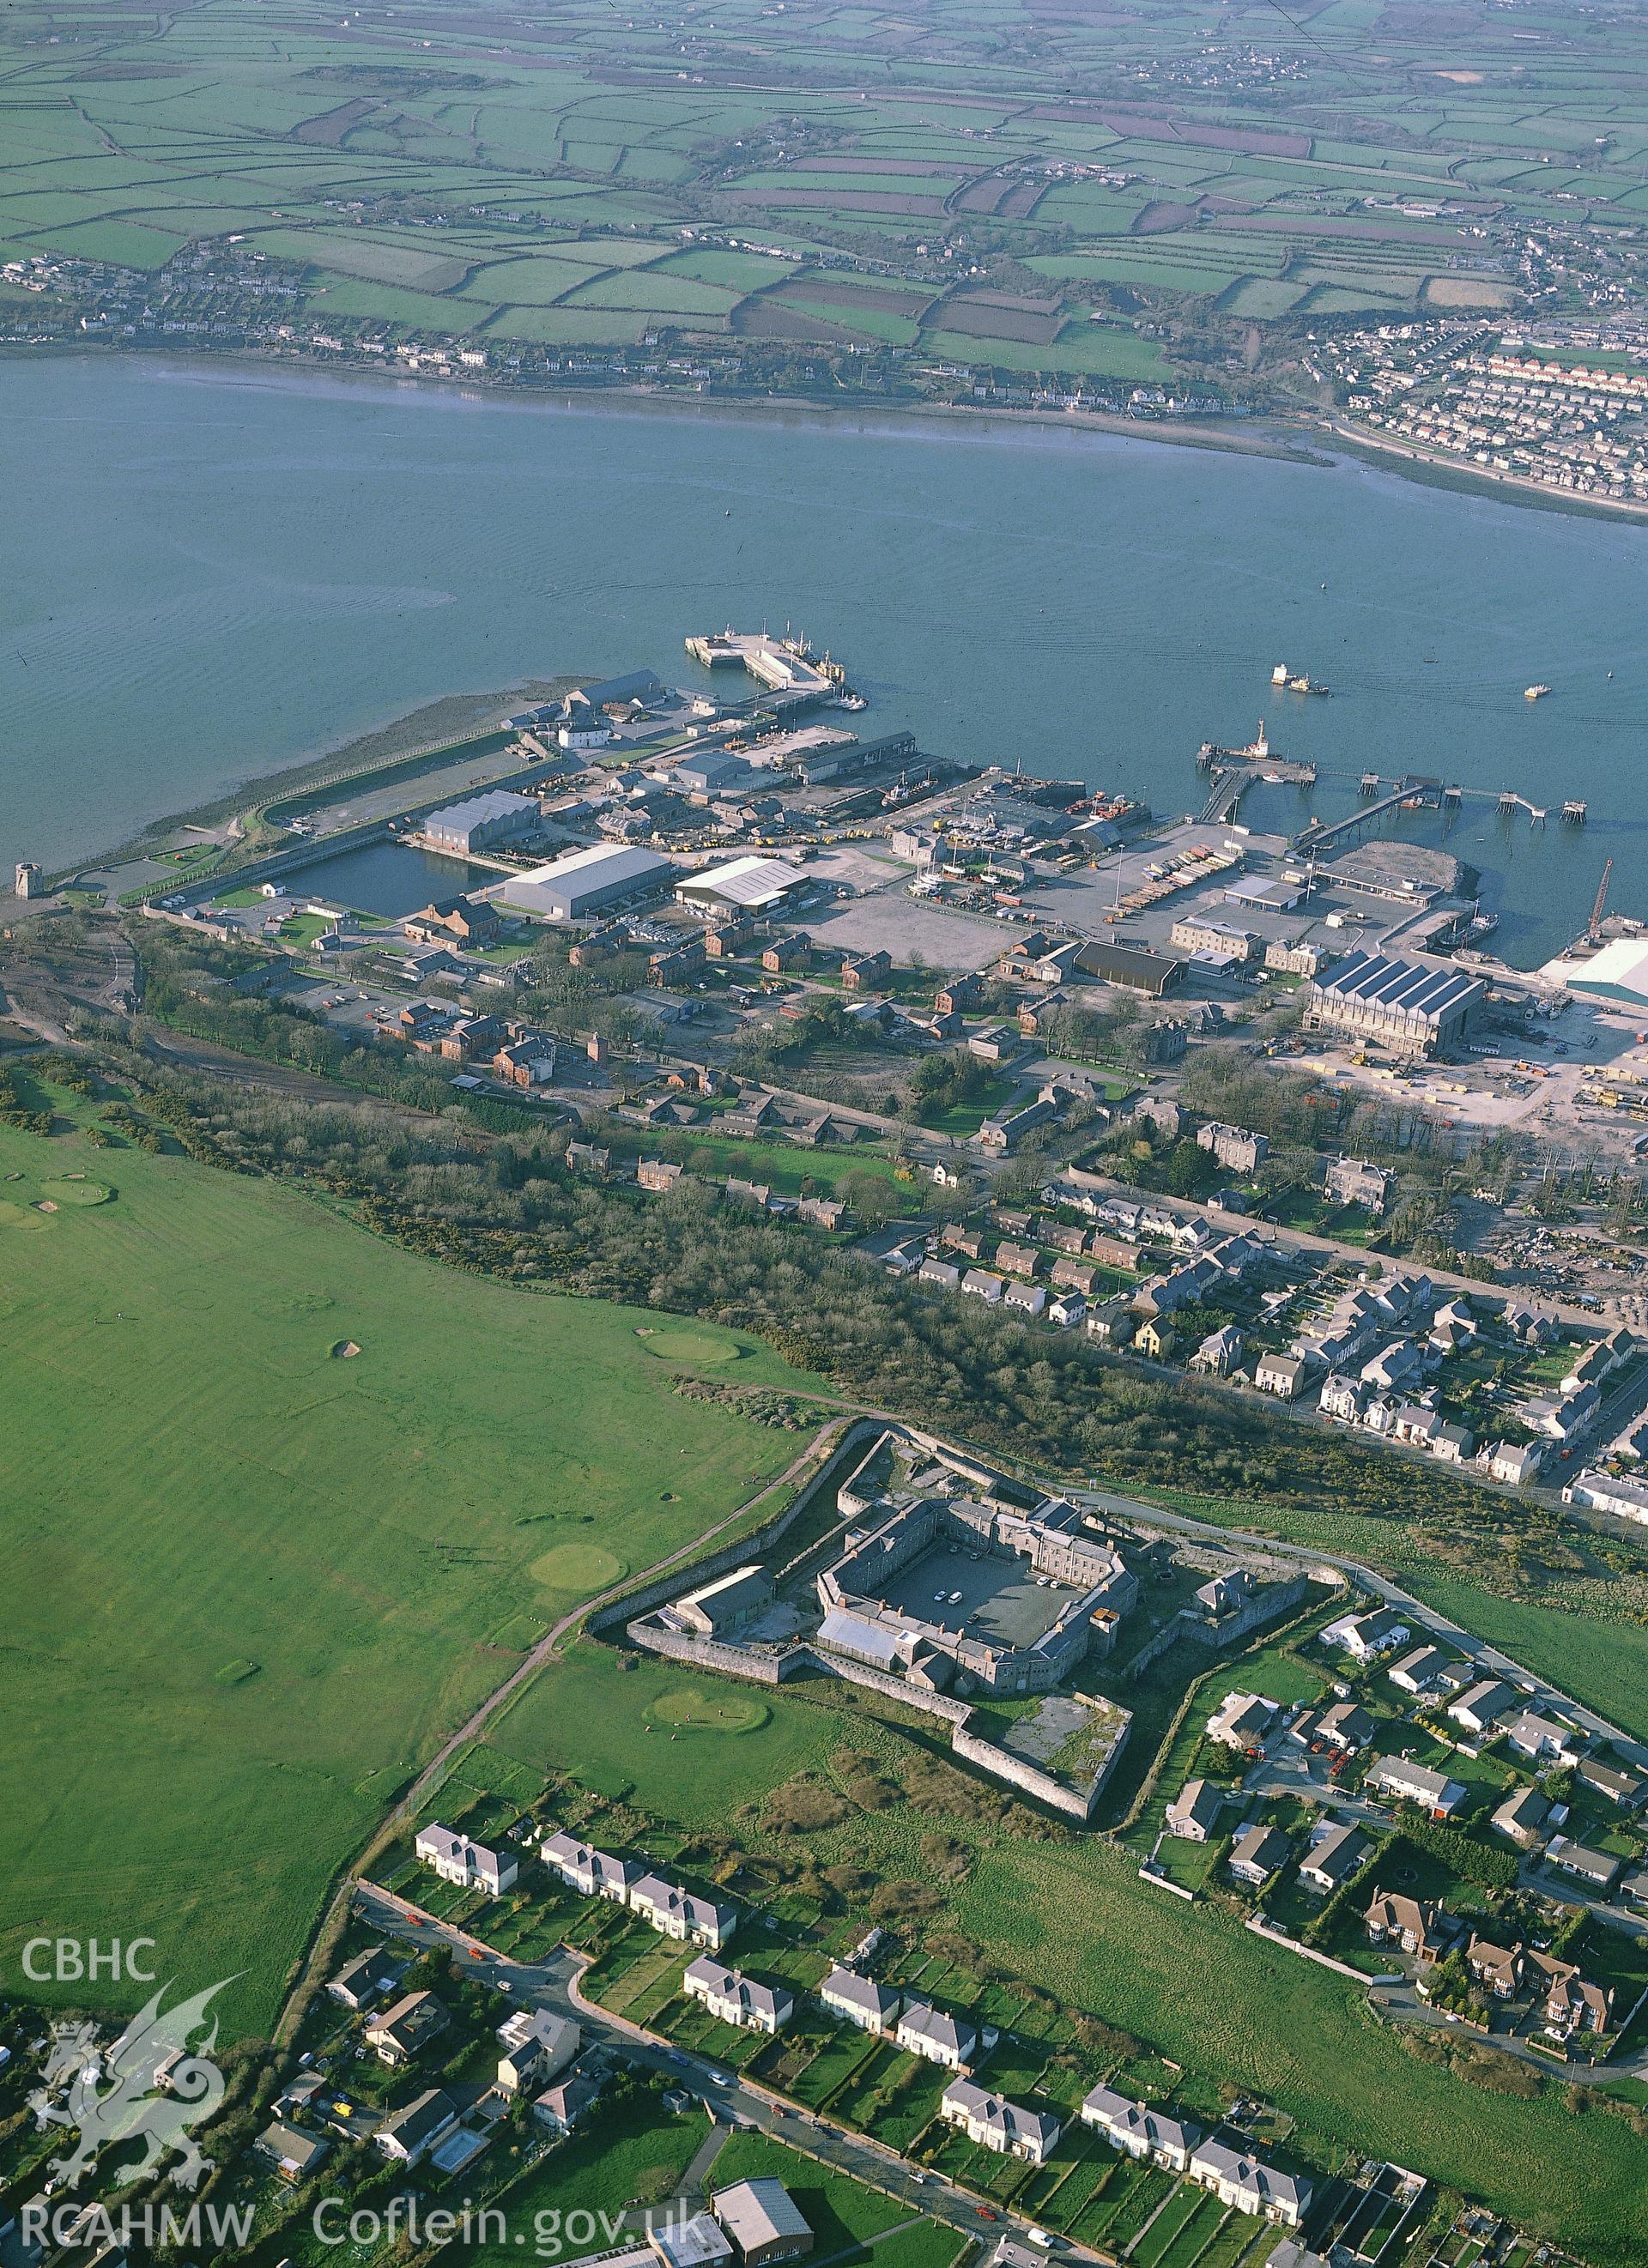 RCAHMW colour oblique aerial photograph of Pembroke Barracks. Taken by C R Musson 1991